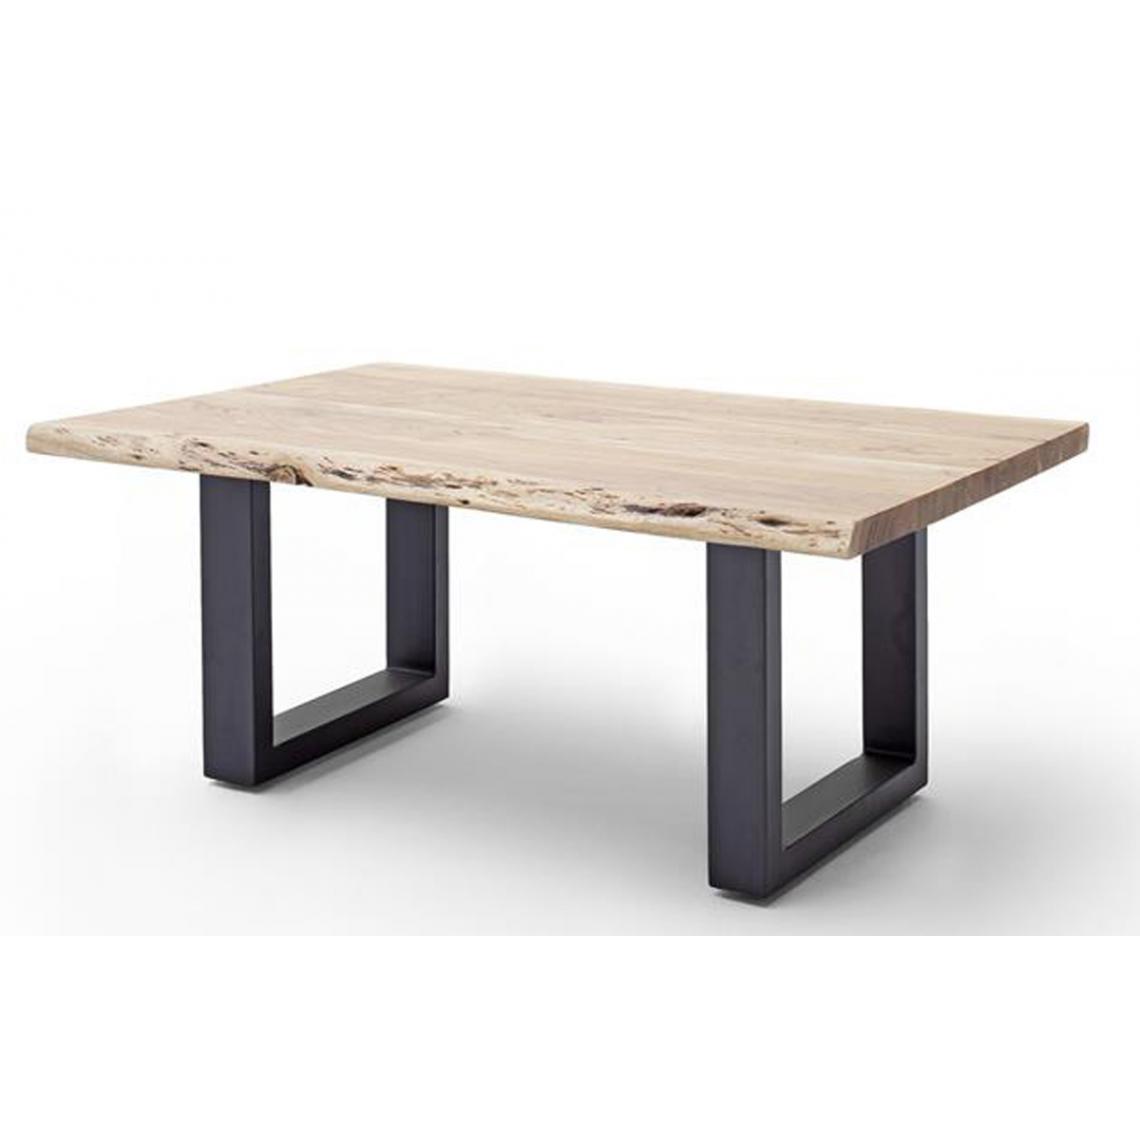 Pegane - Table basse en bois d'acacia massif naturel et métal anthracite - L.110 x H.45 x P.70 cm - Tables basses